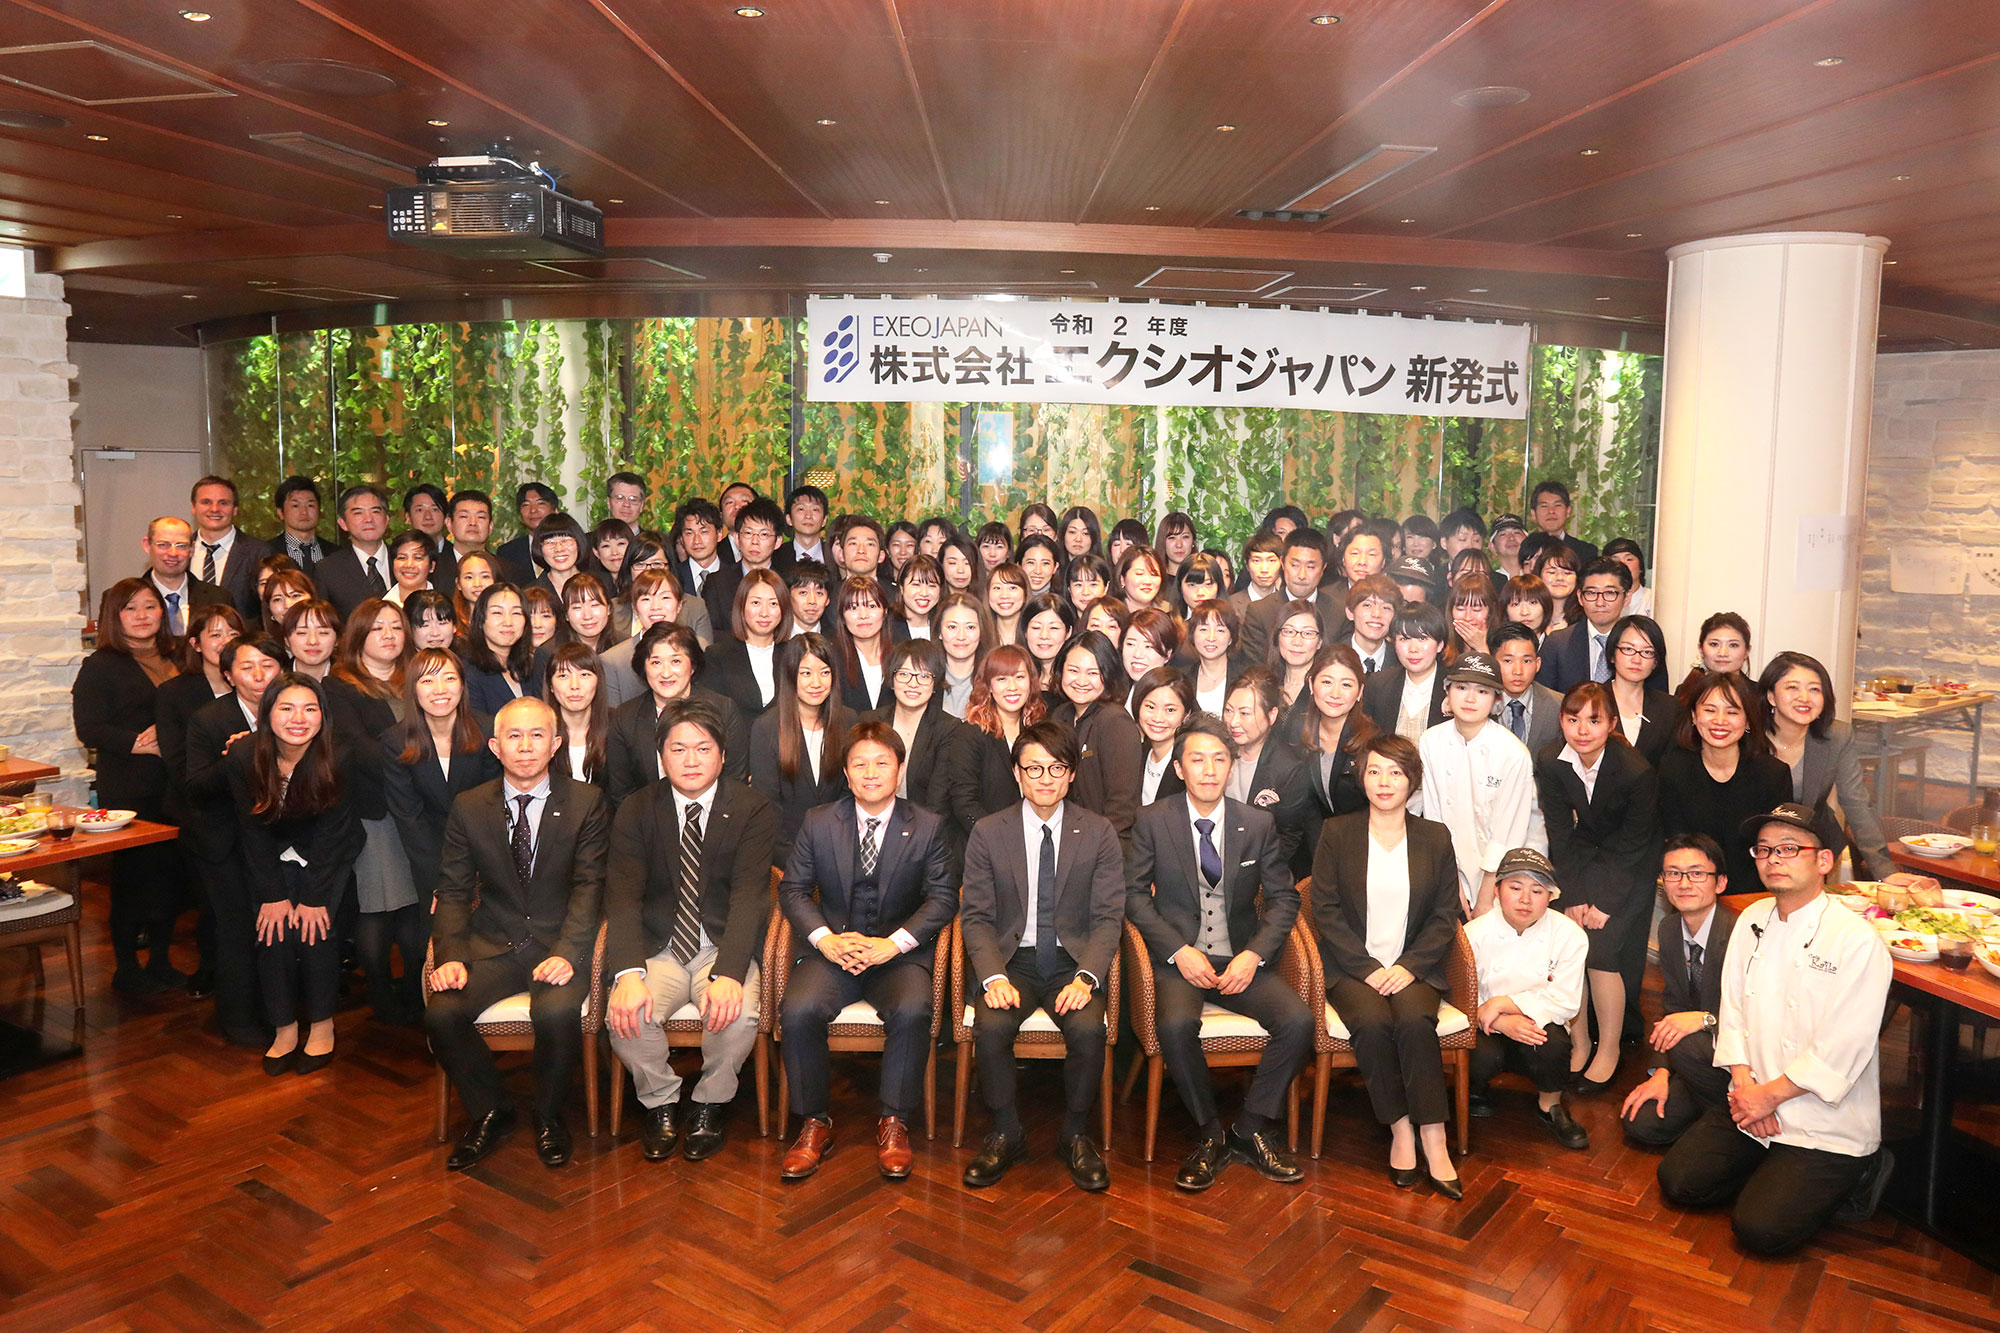 株式会社 エクシオジャパンで 21 新卒選考会 本格的に開始 株式会社エクシオジャパンのプレスリリース